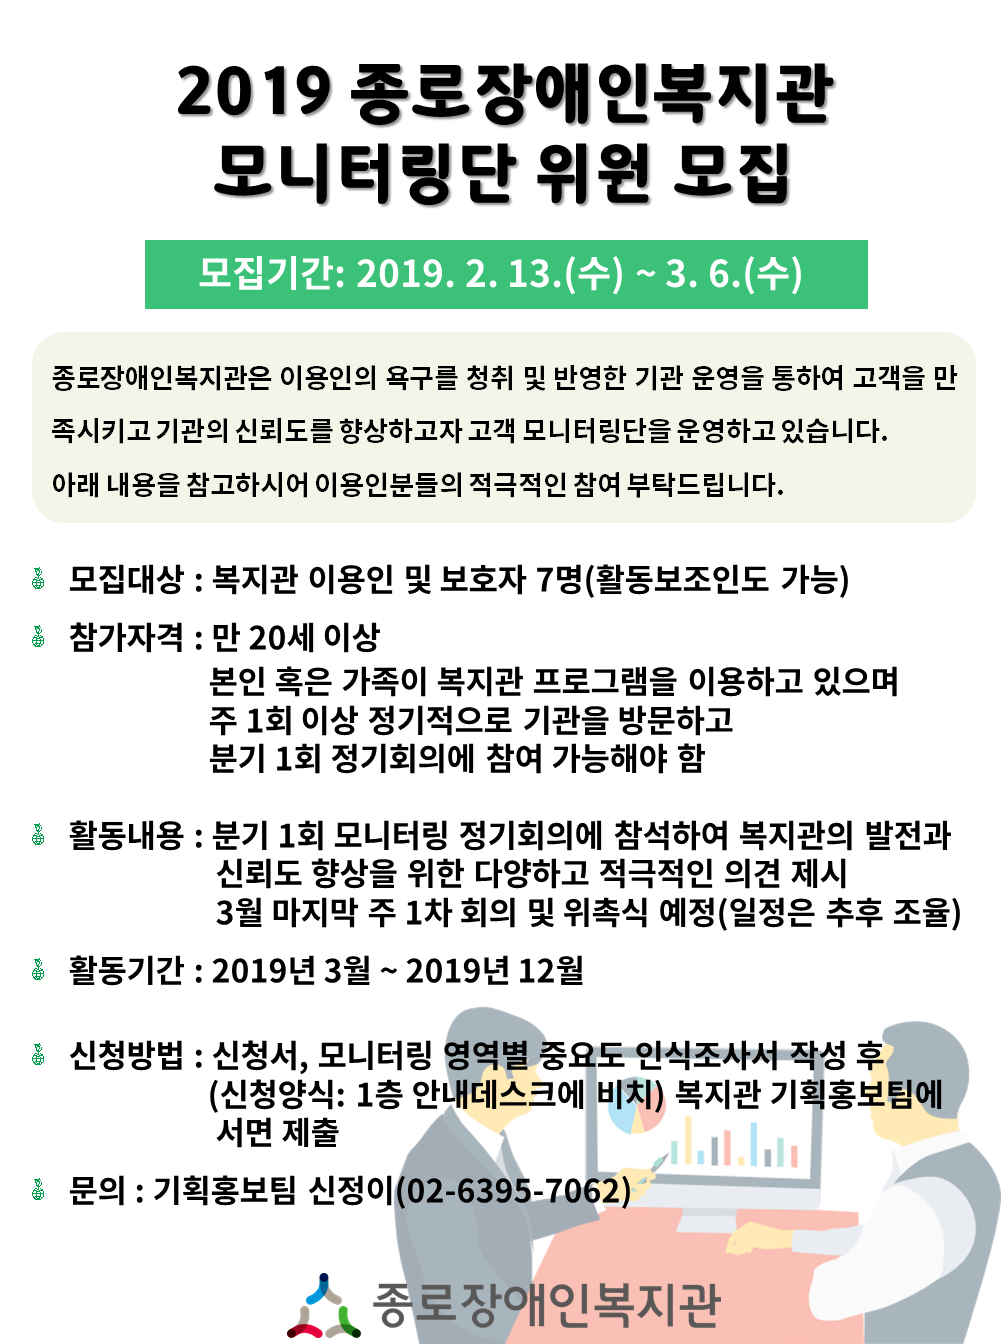 2019_모니터링단_홍보물.PNG